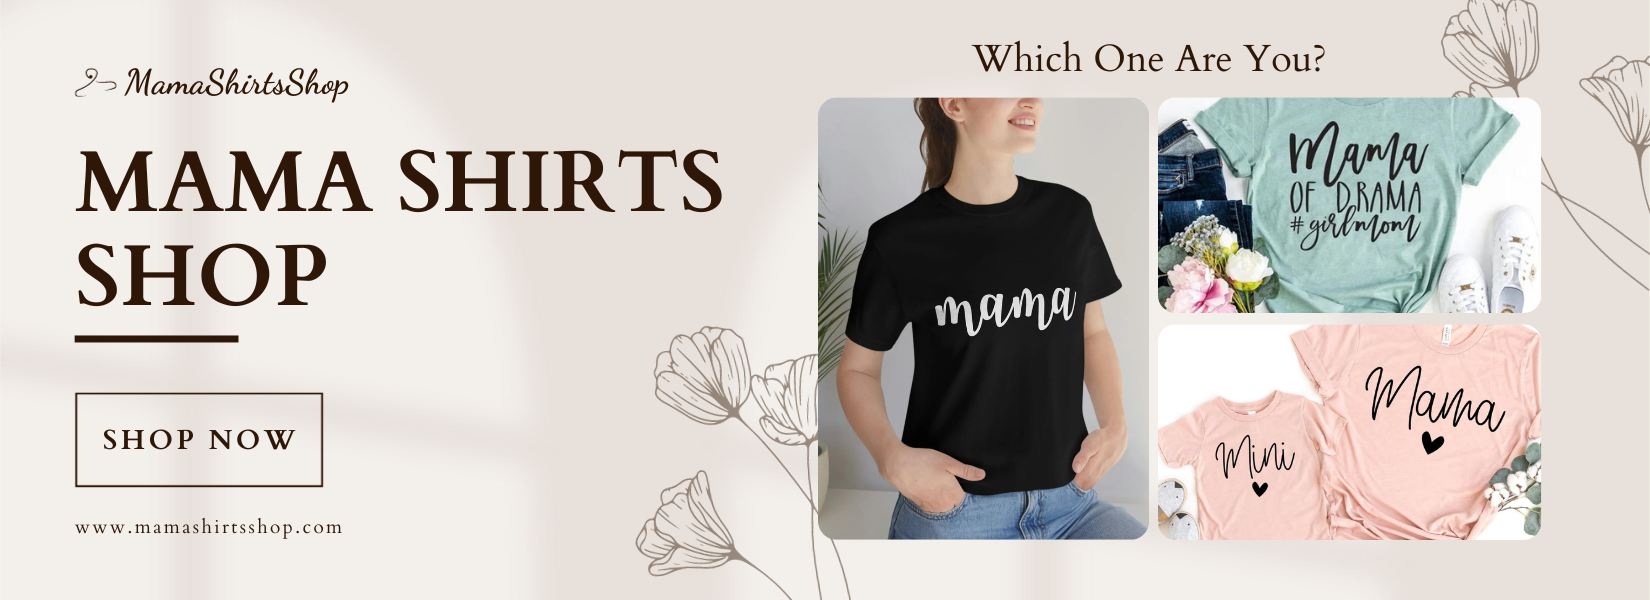 Mama-shirts-shop